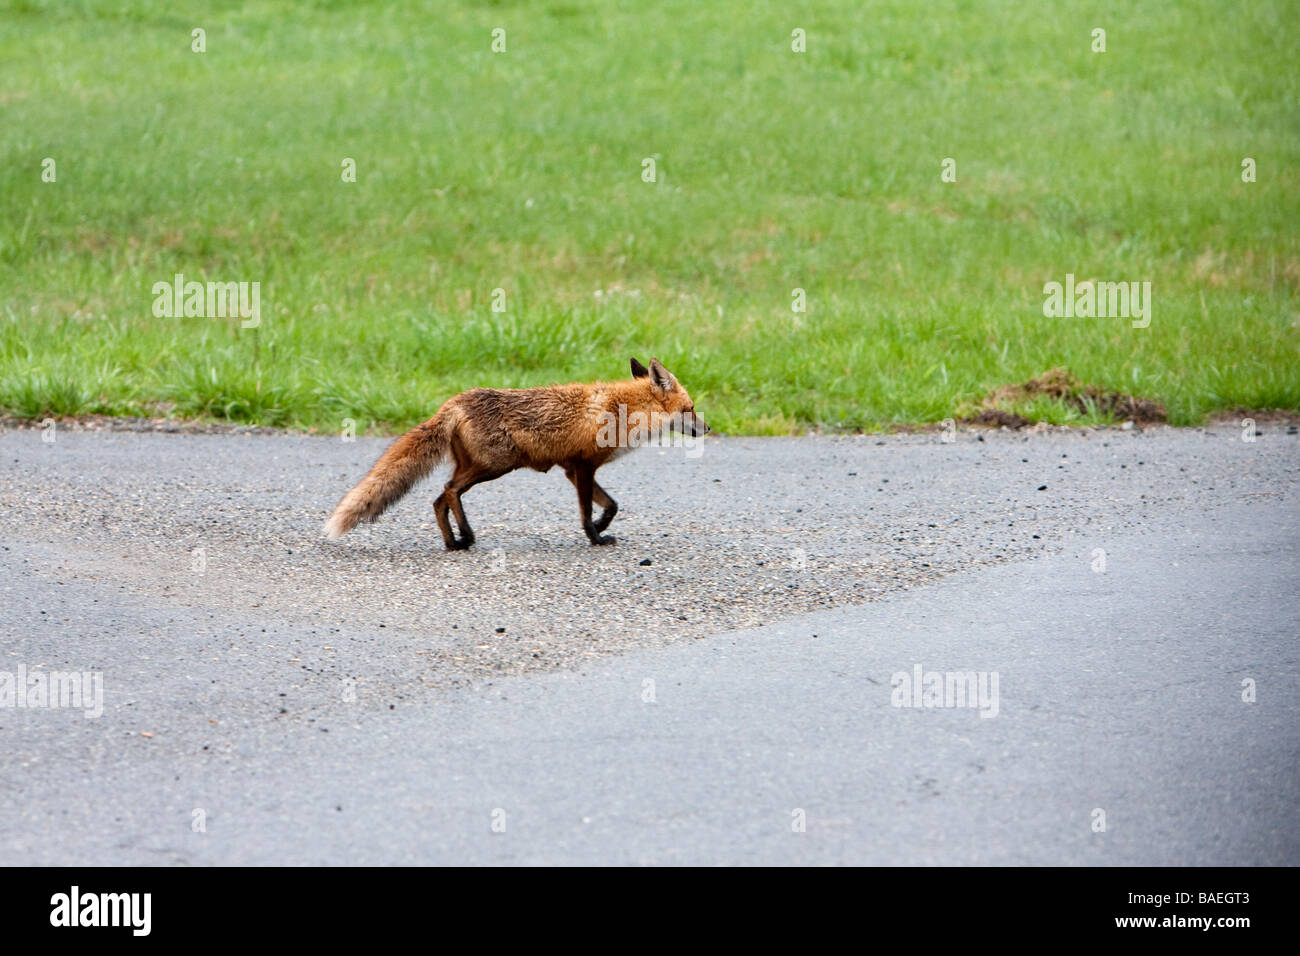 Une Amérique du Nord Red Fox traversent la route dans le pays. Banque D'Images